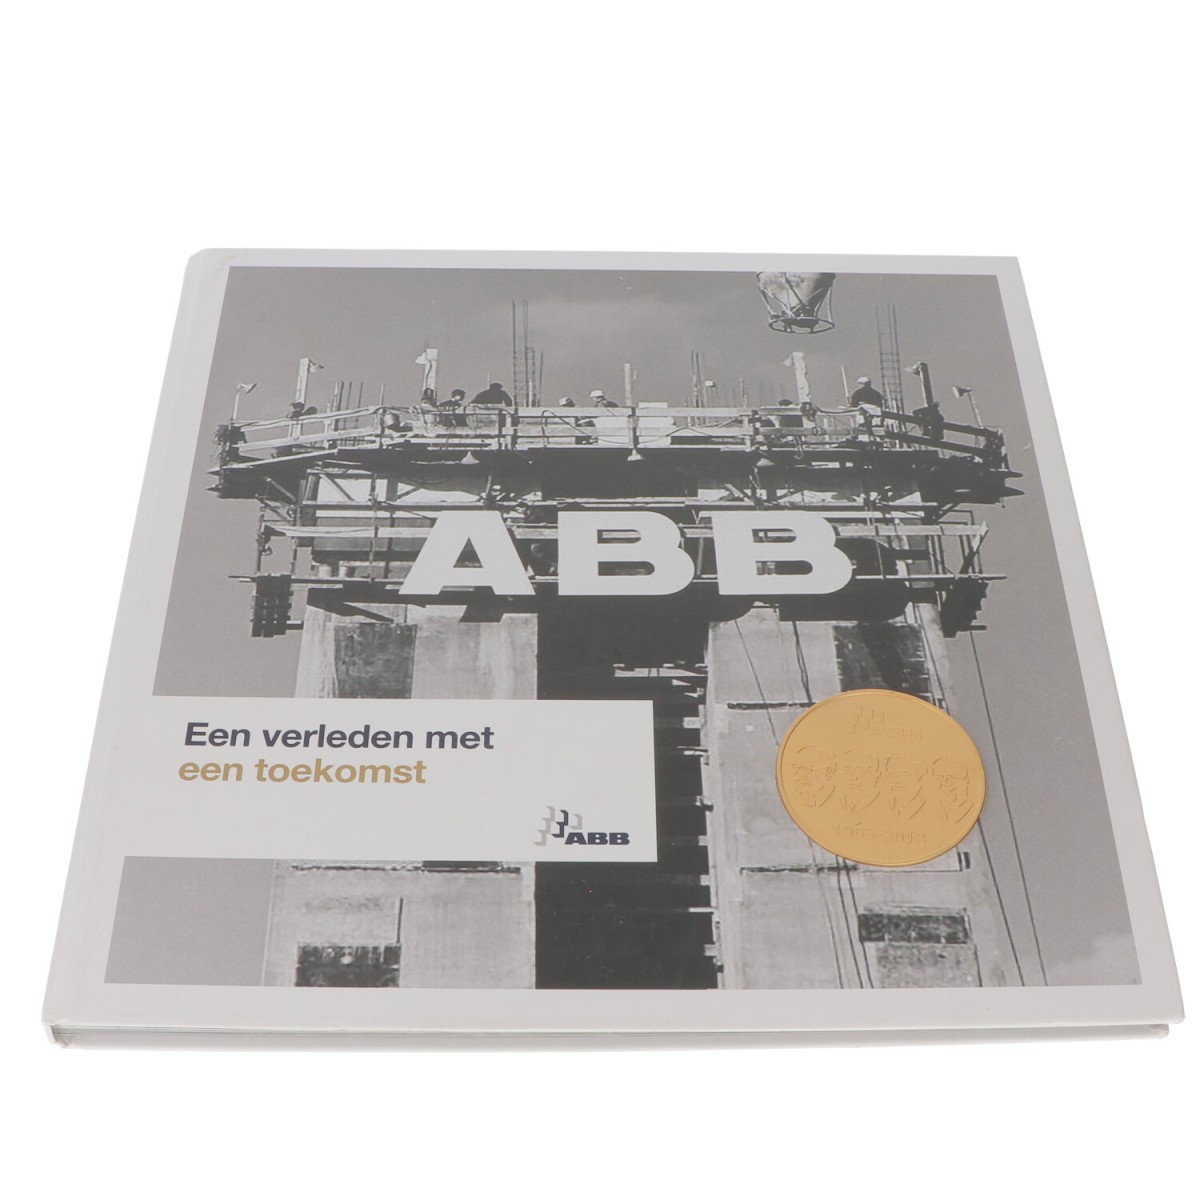 Nederland. 2013. 50 jaar ABB in jubileumboek 'Een verleden met een toekomst'.